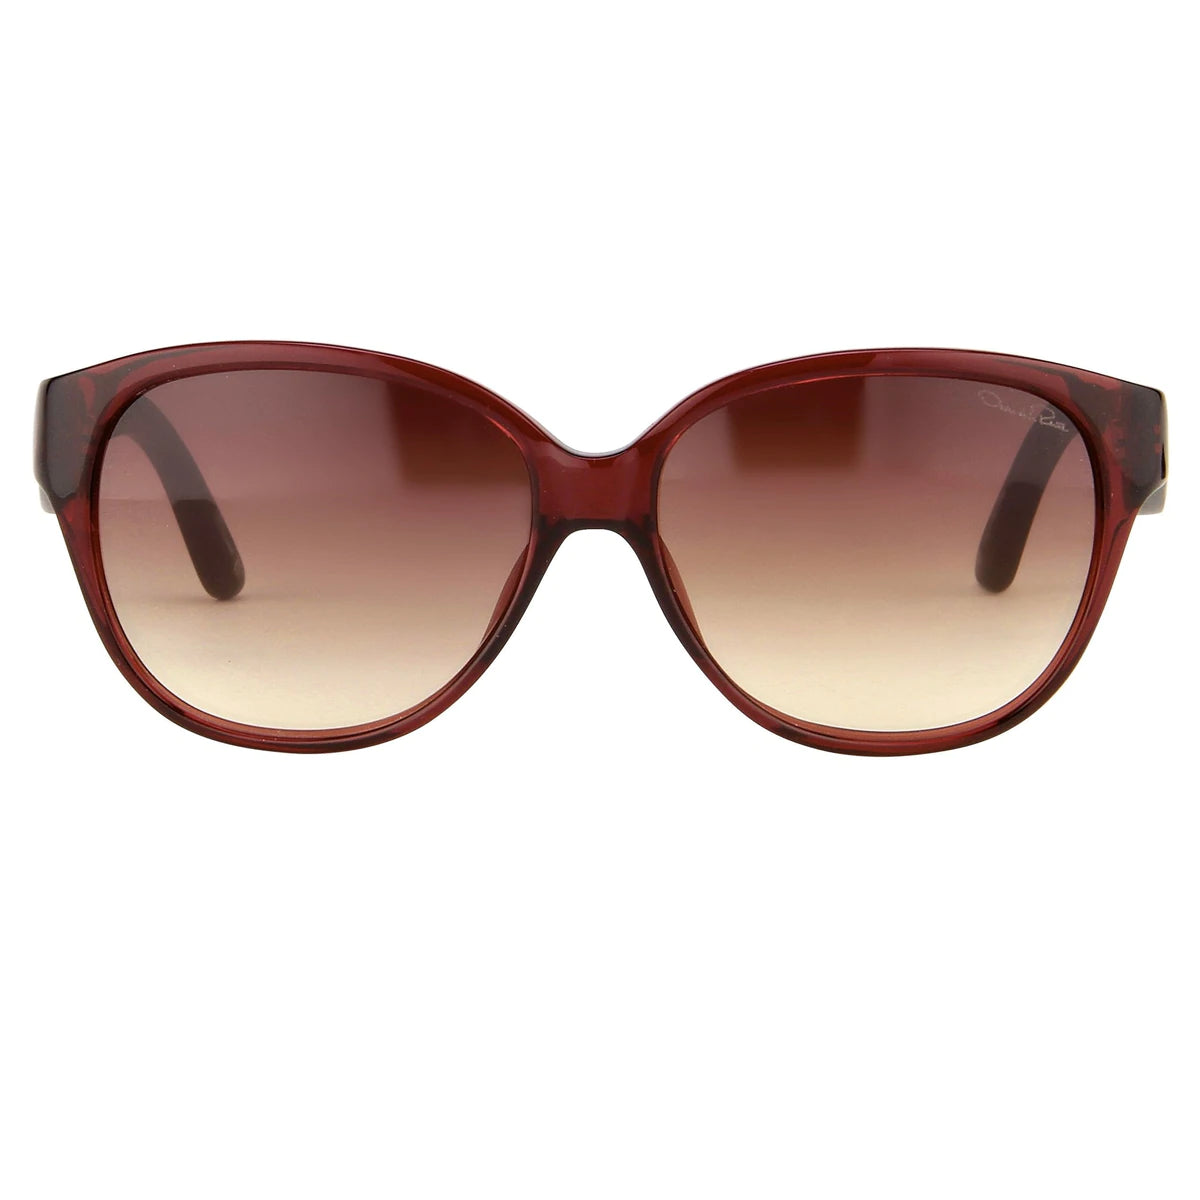 Oscar De La Renta Sunglasses Oval Red and Brown ODLR30C5SUN